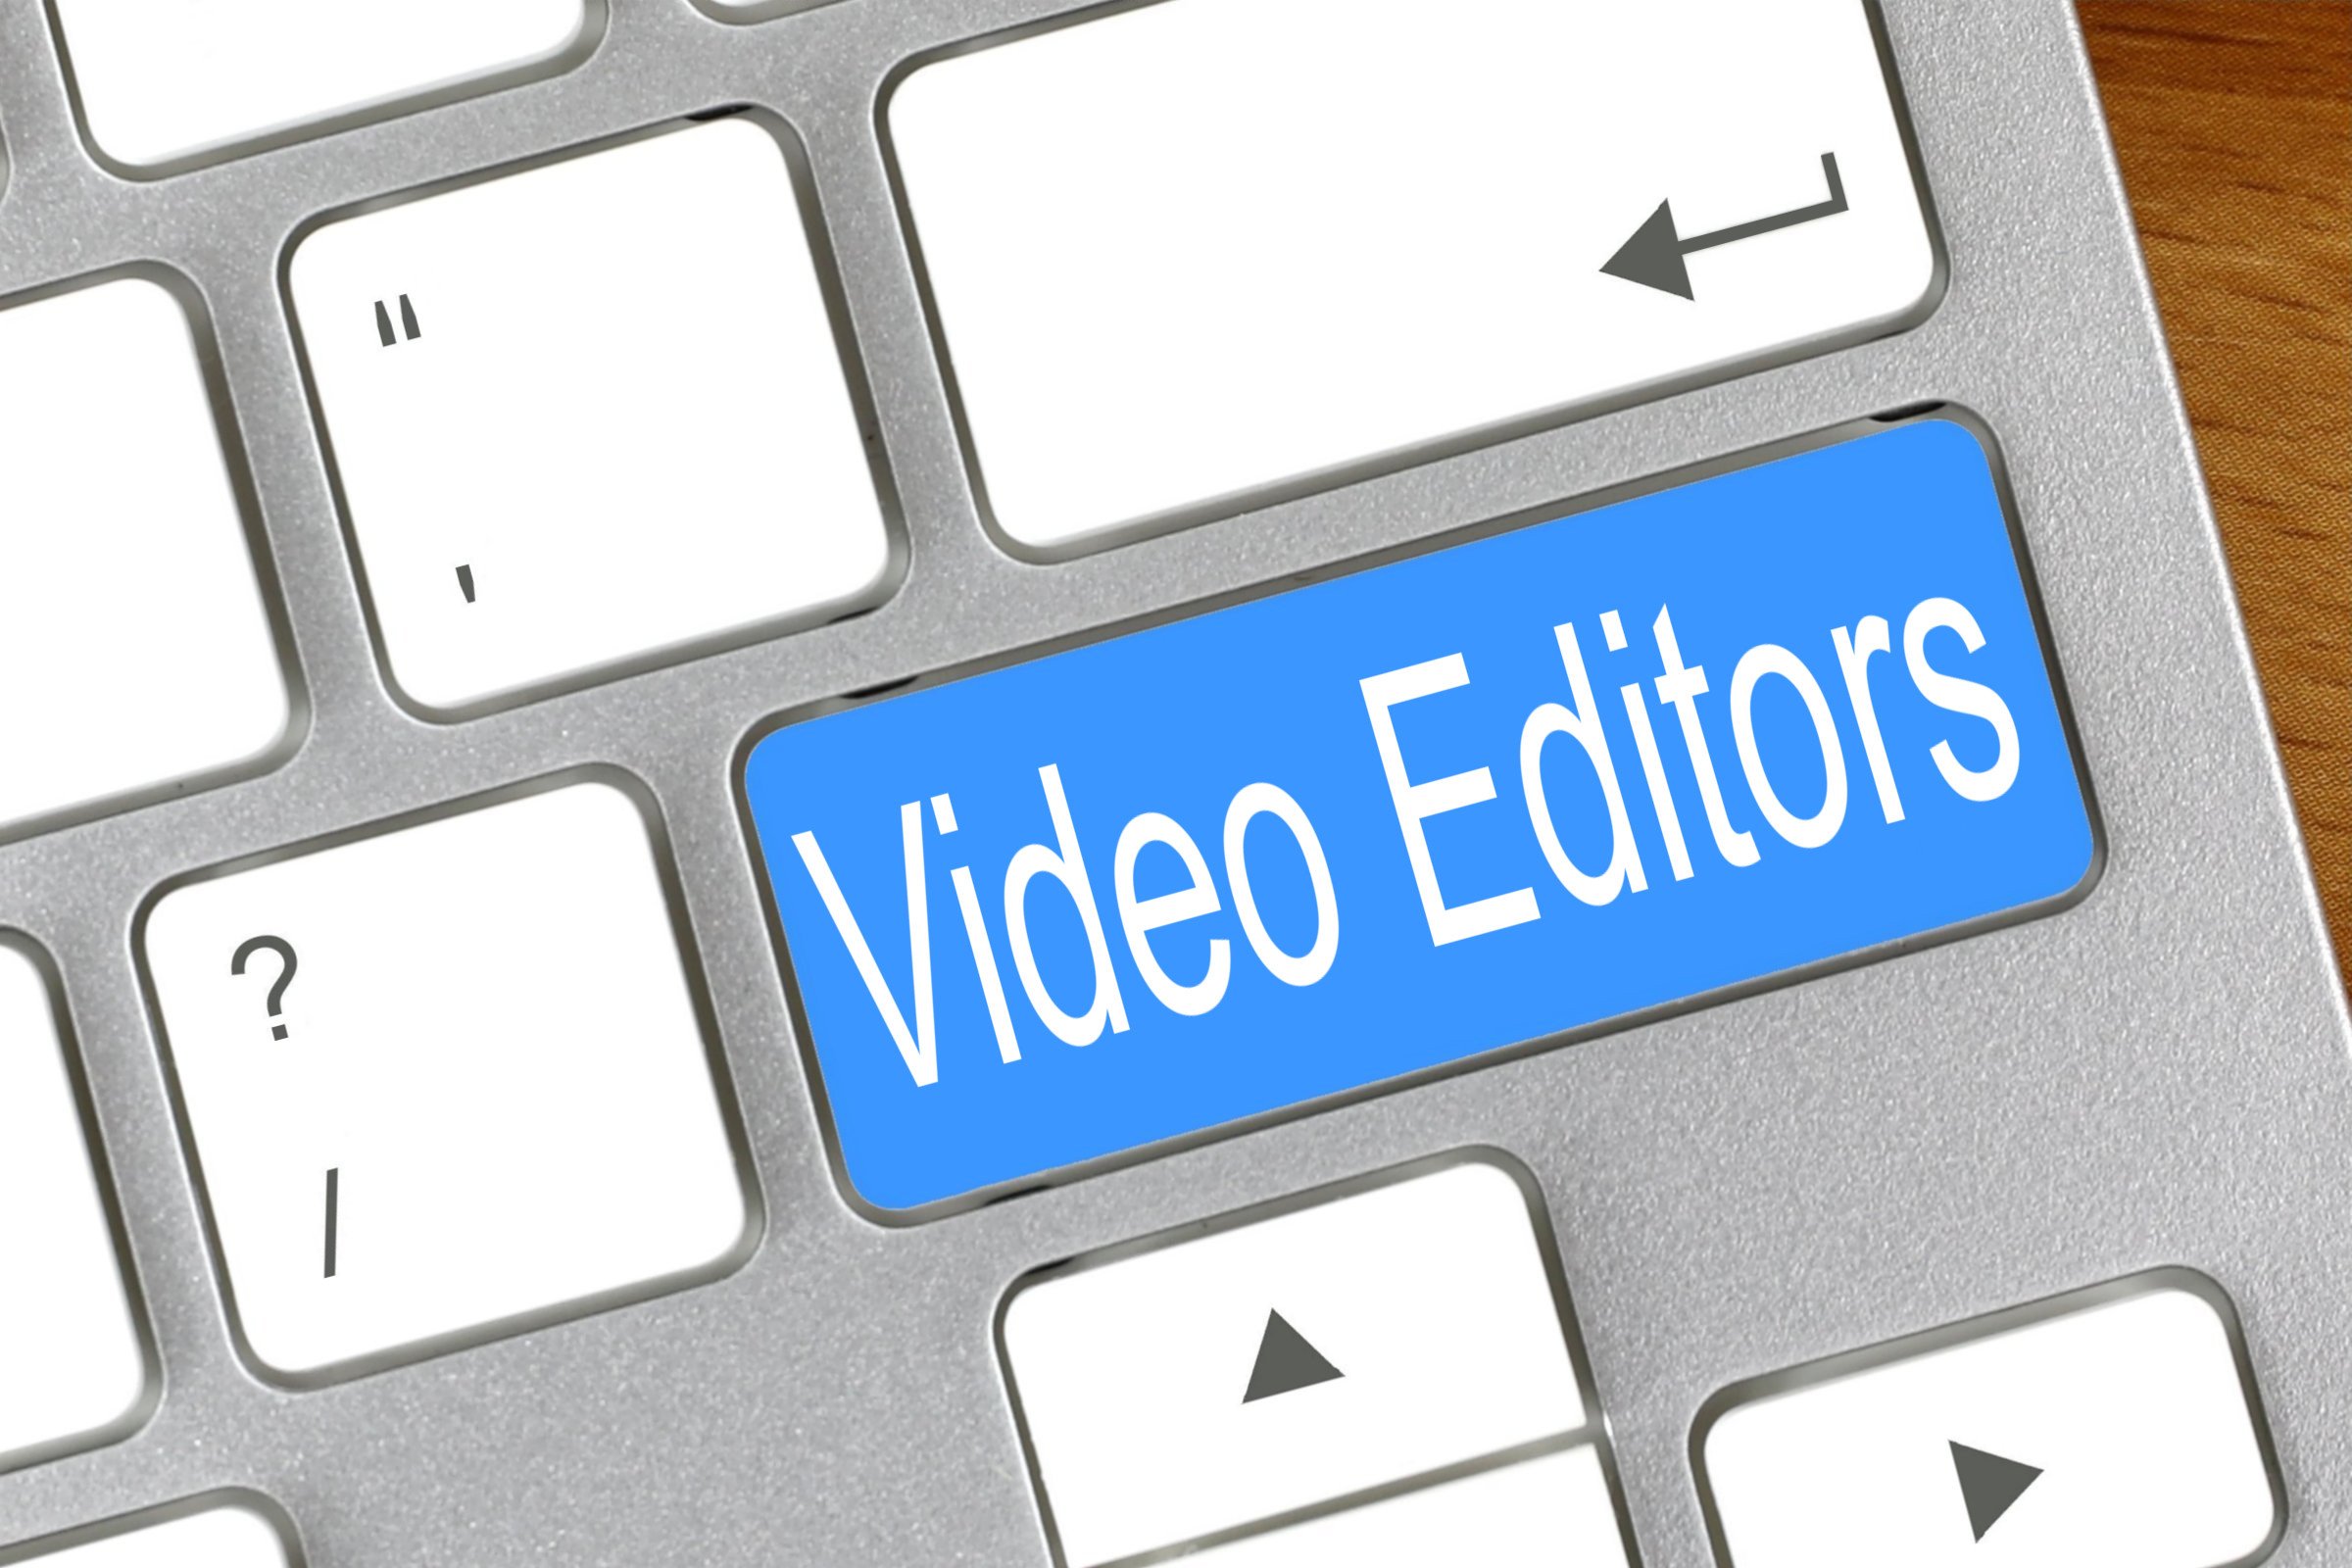 video editors